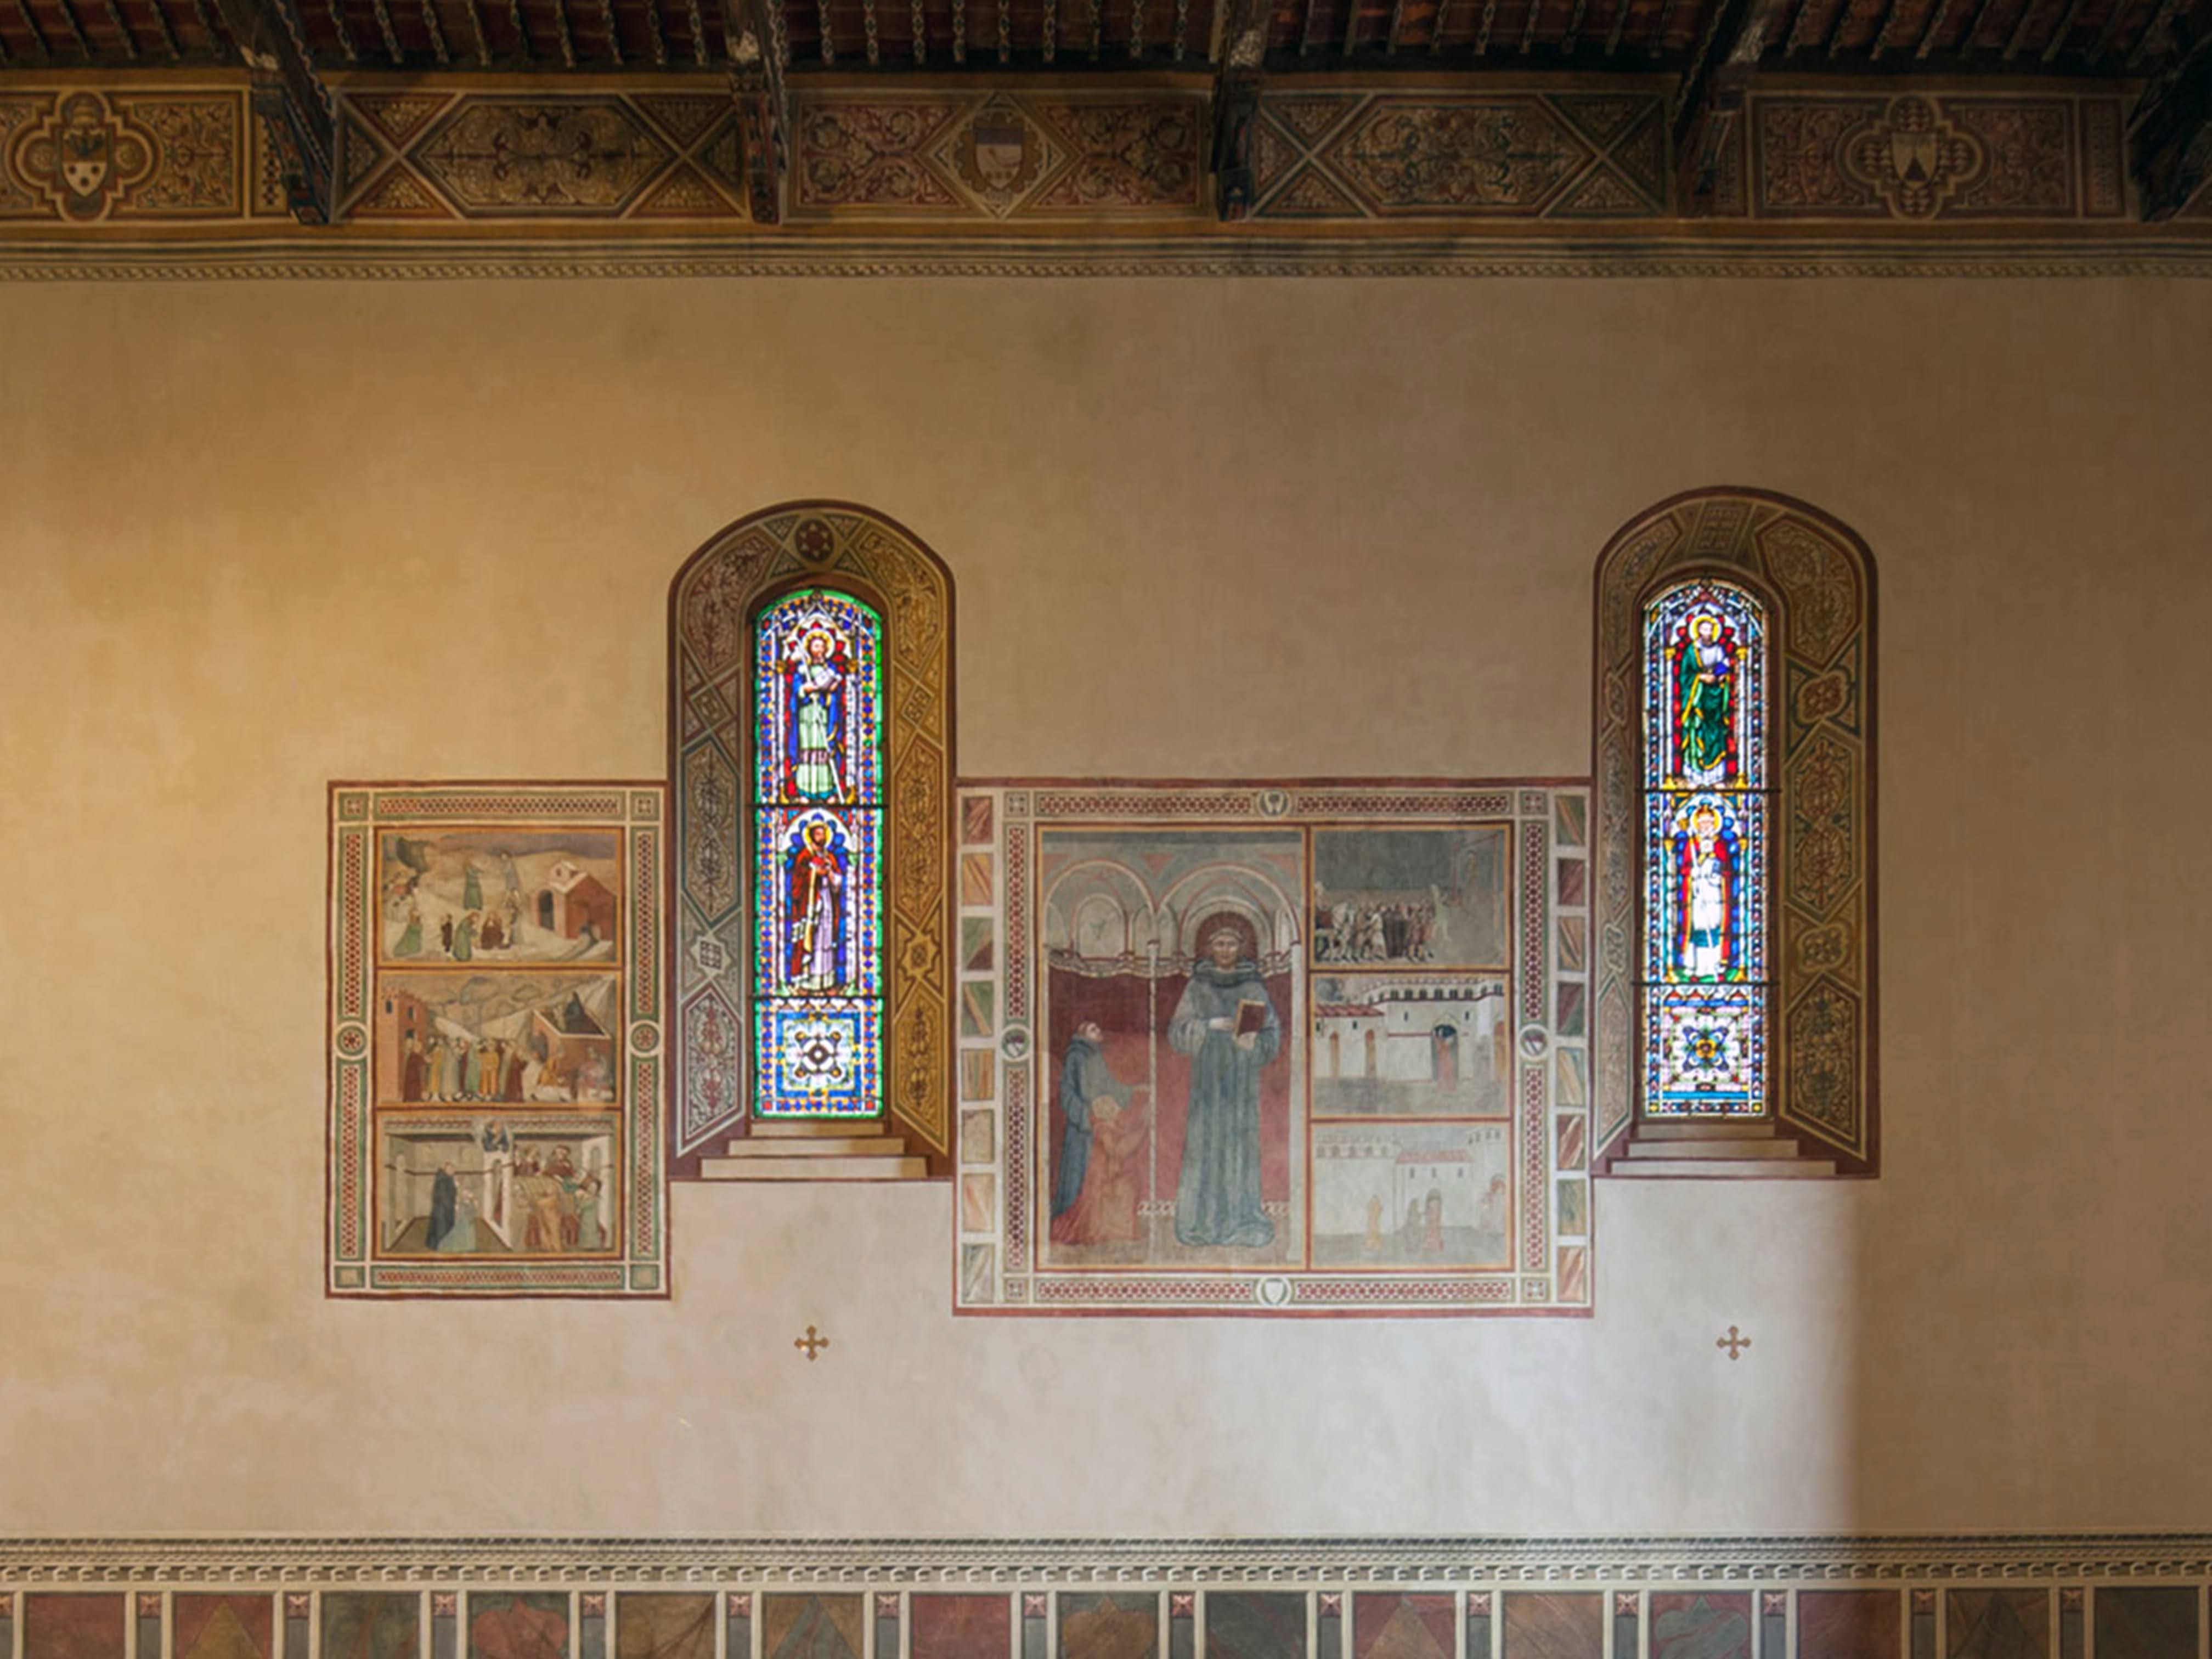 Chiesa di Sant'Agostino, grande riquadro sulla parete sinistra, che mostra al centro la figura di un Santo agostiniano e alcune scene della sua vita (Montalcino)